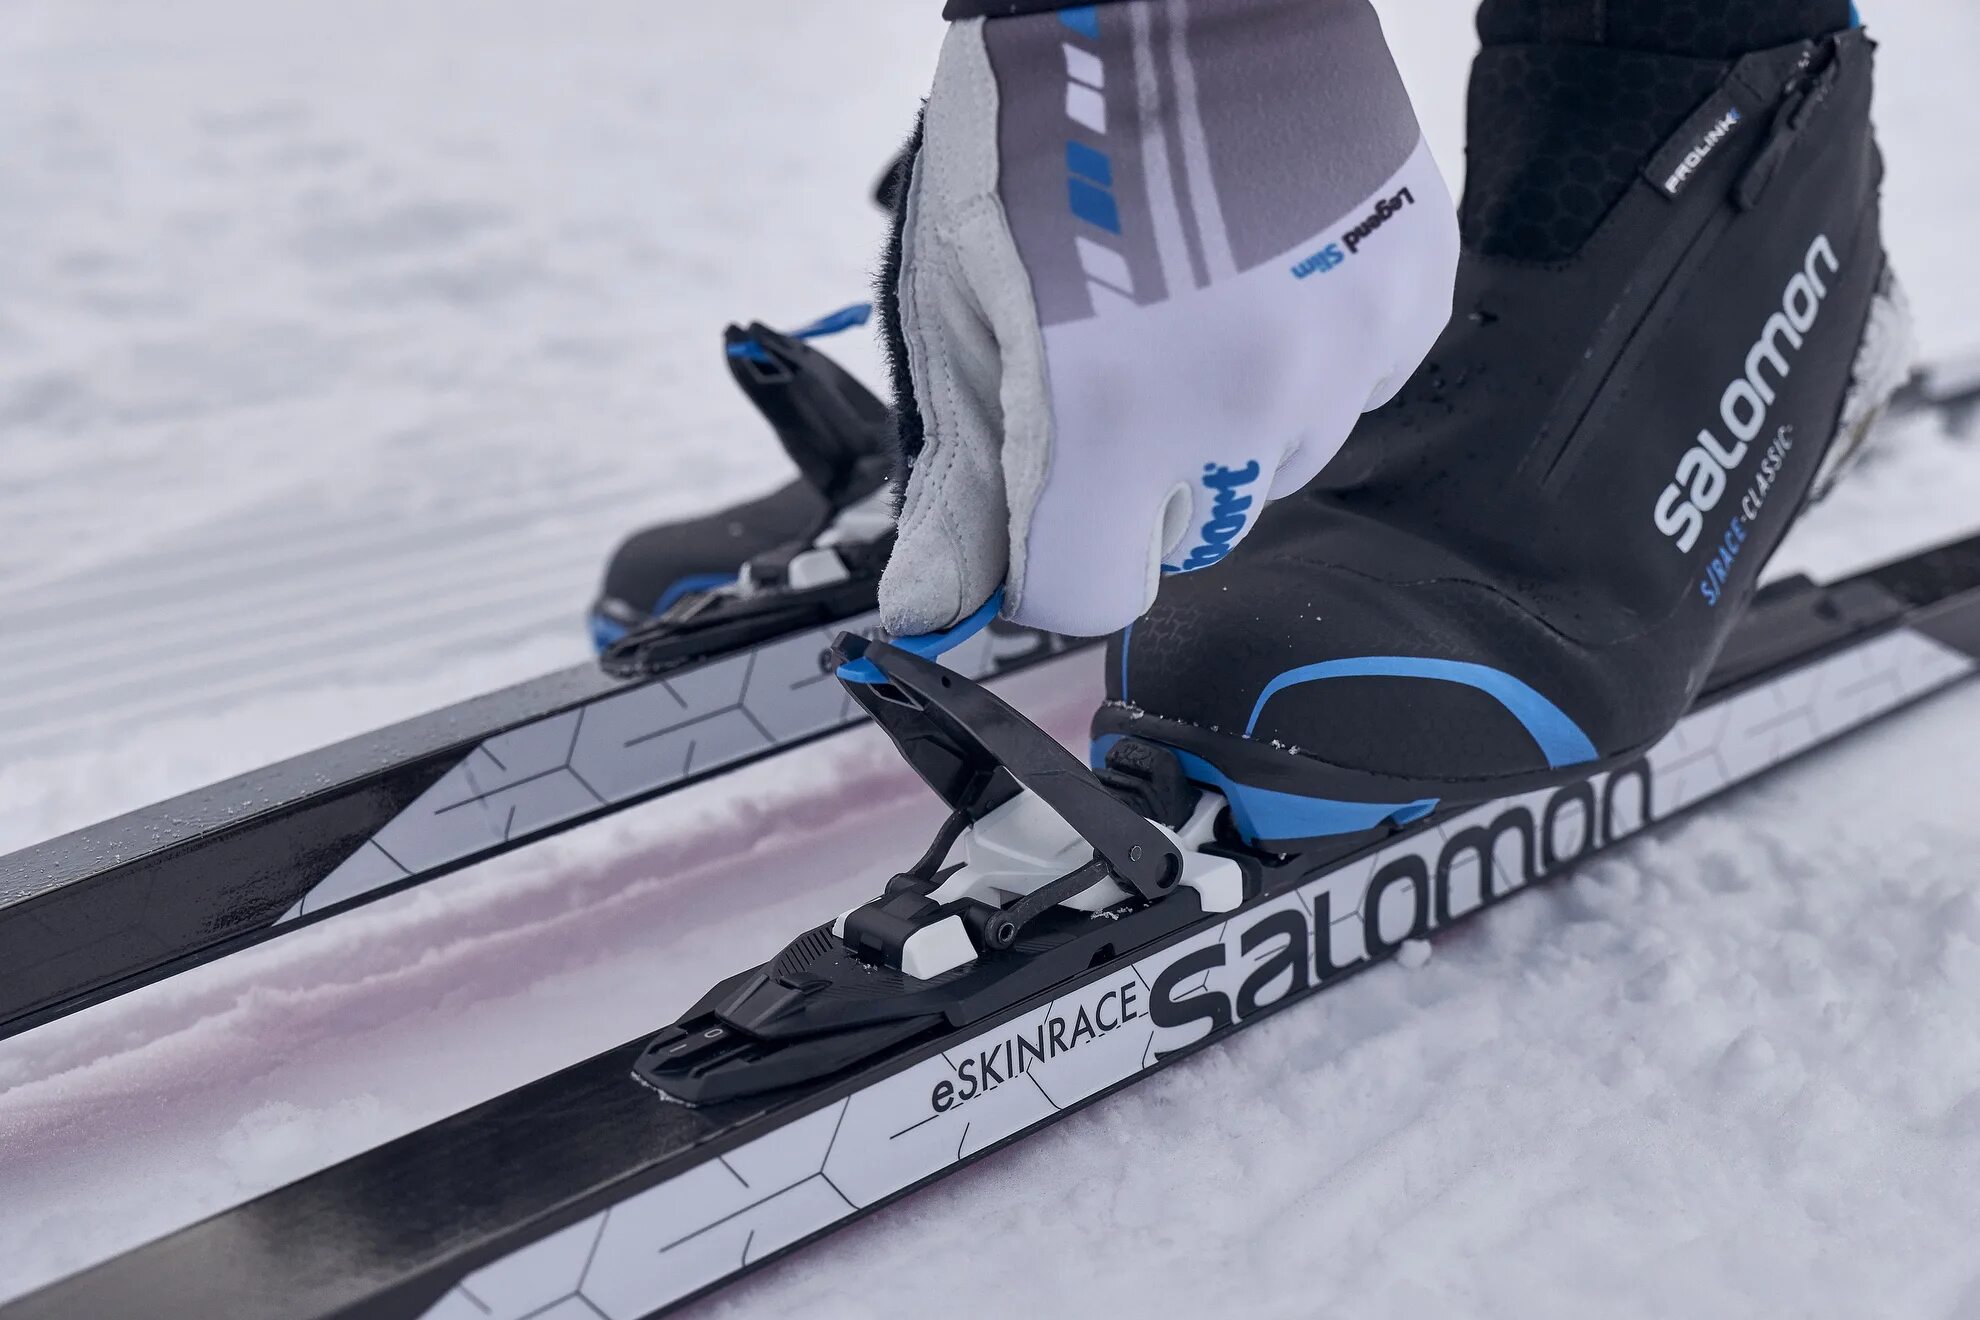 Какие крепление купить. Salomon лыжи классика CL. Salomon 2019-20 Prolink Race Classic. Salomon 2019-20 Prolink Race Classic крепления. Крепления Atomic Prolink.